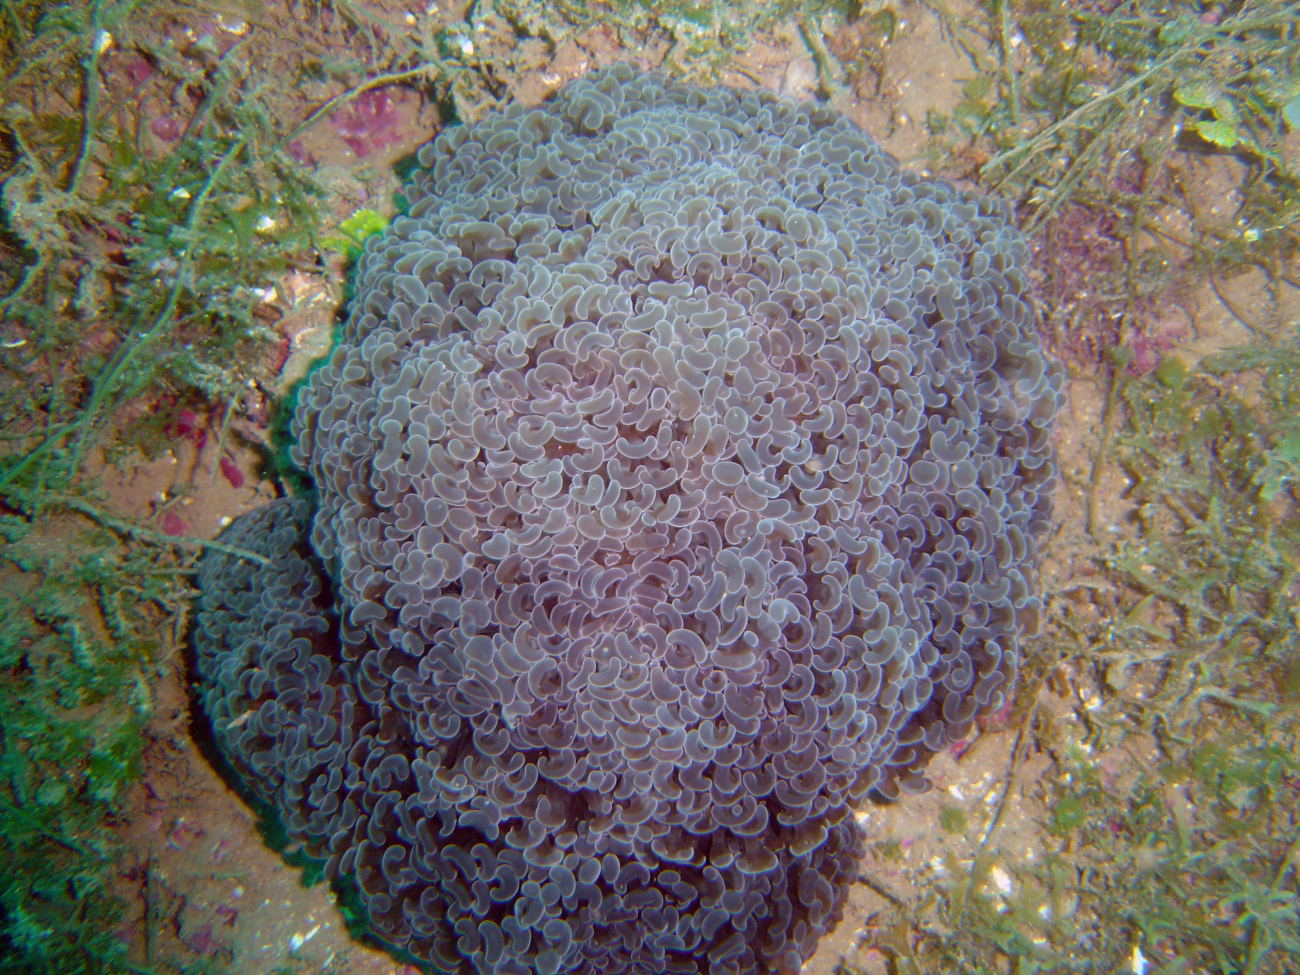 Coral (Euphyllia ancora)